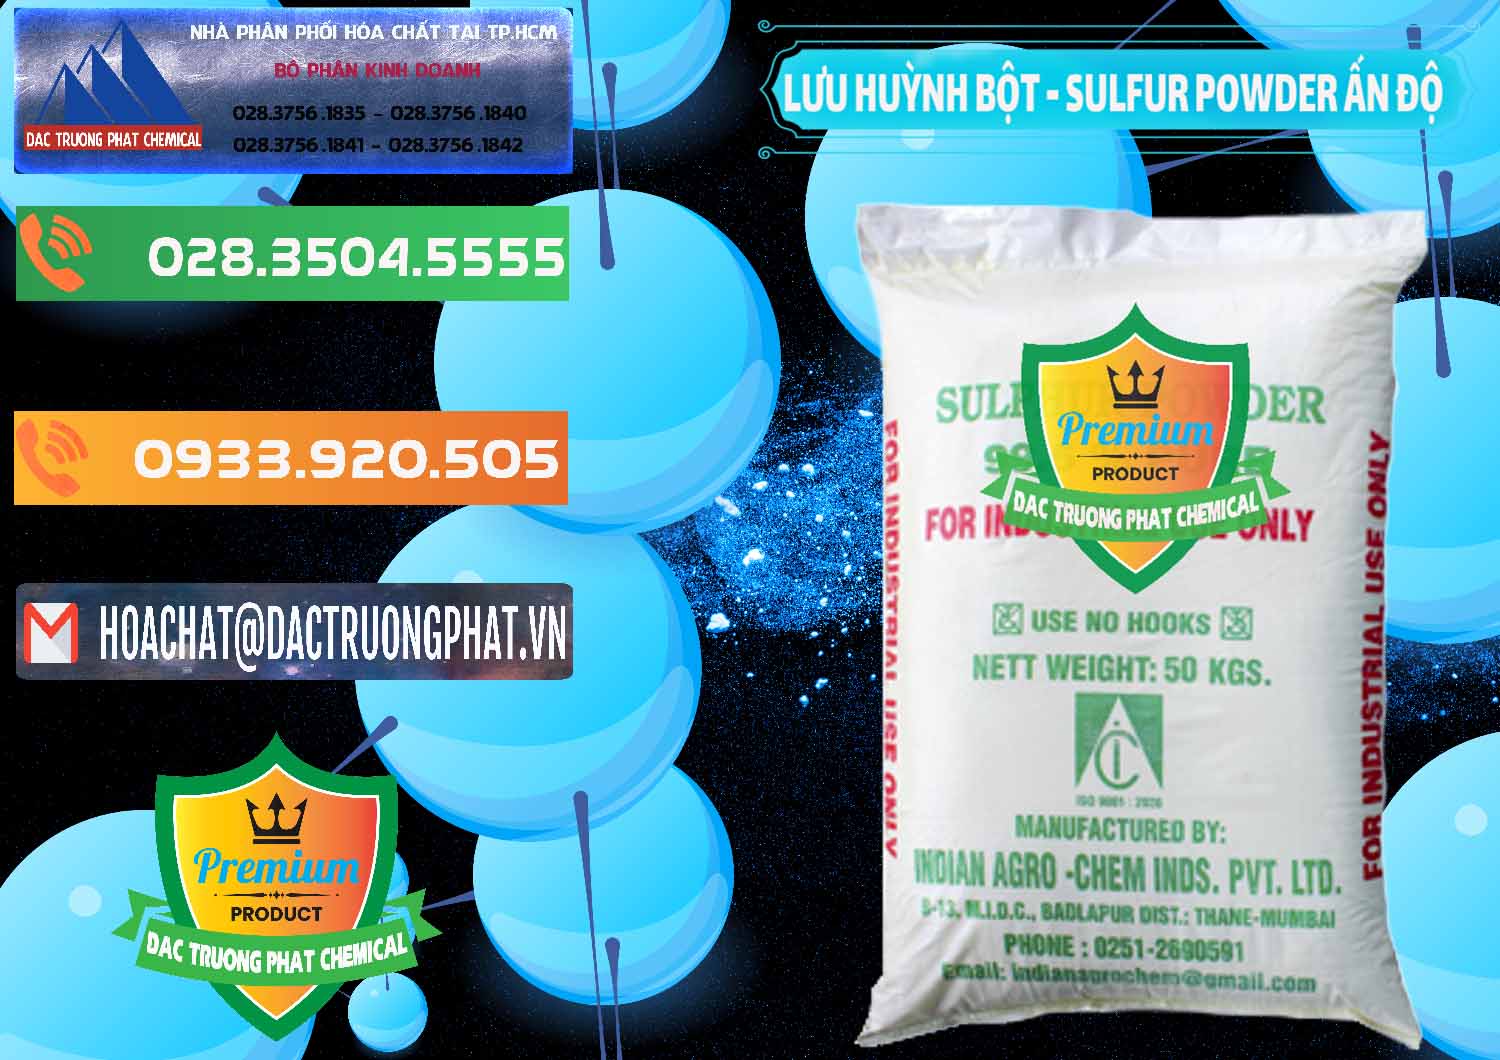 Cung cấp _ bán Lưu huỳnh Bột - Sulfur Powder Ấn Độ India - 0347 - Công ty chuyên cung cấp ( nhập khẩu ) hóa chất tại TP.HCM - hoachatxulynuoc.com.vn